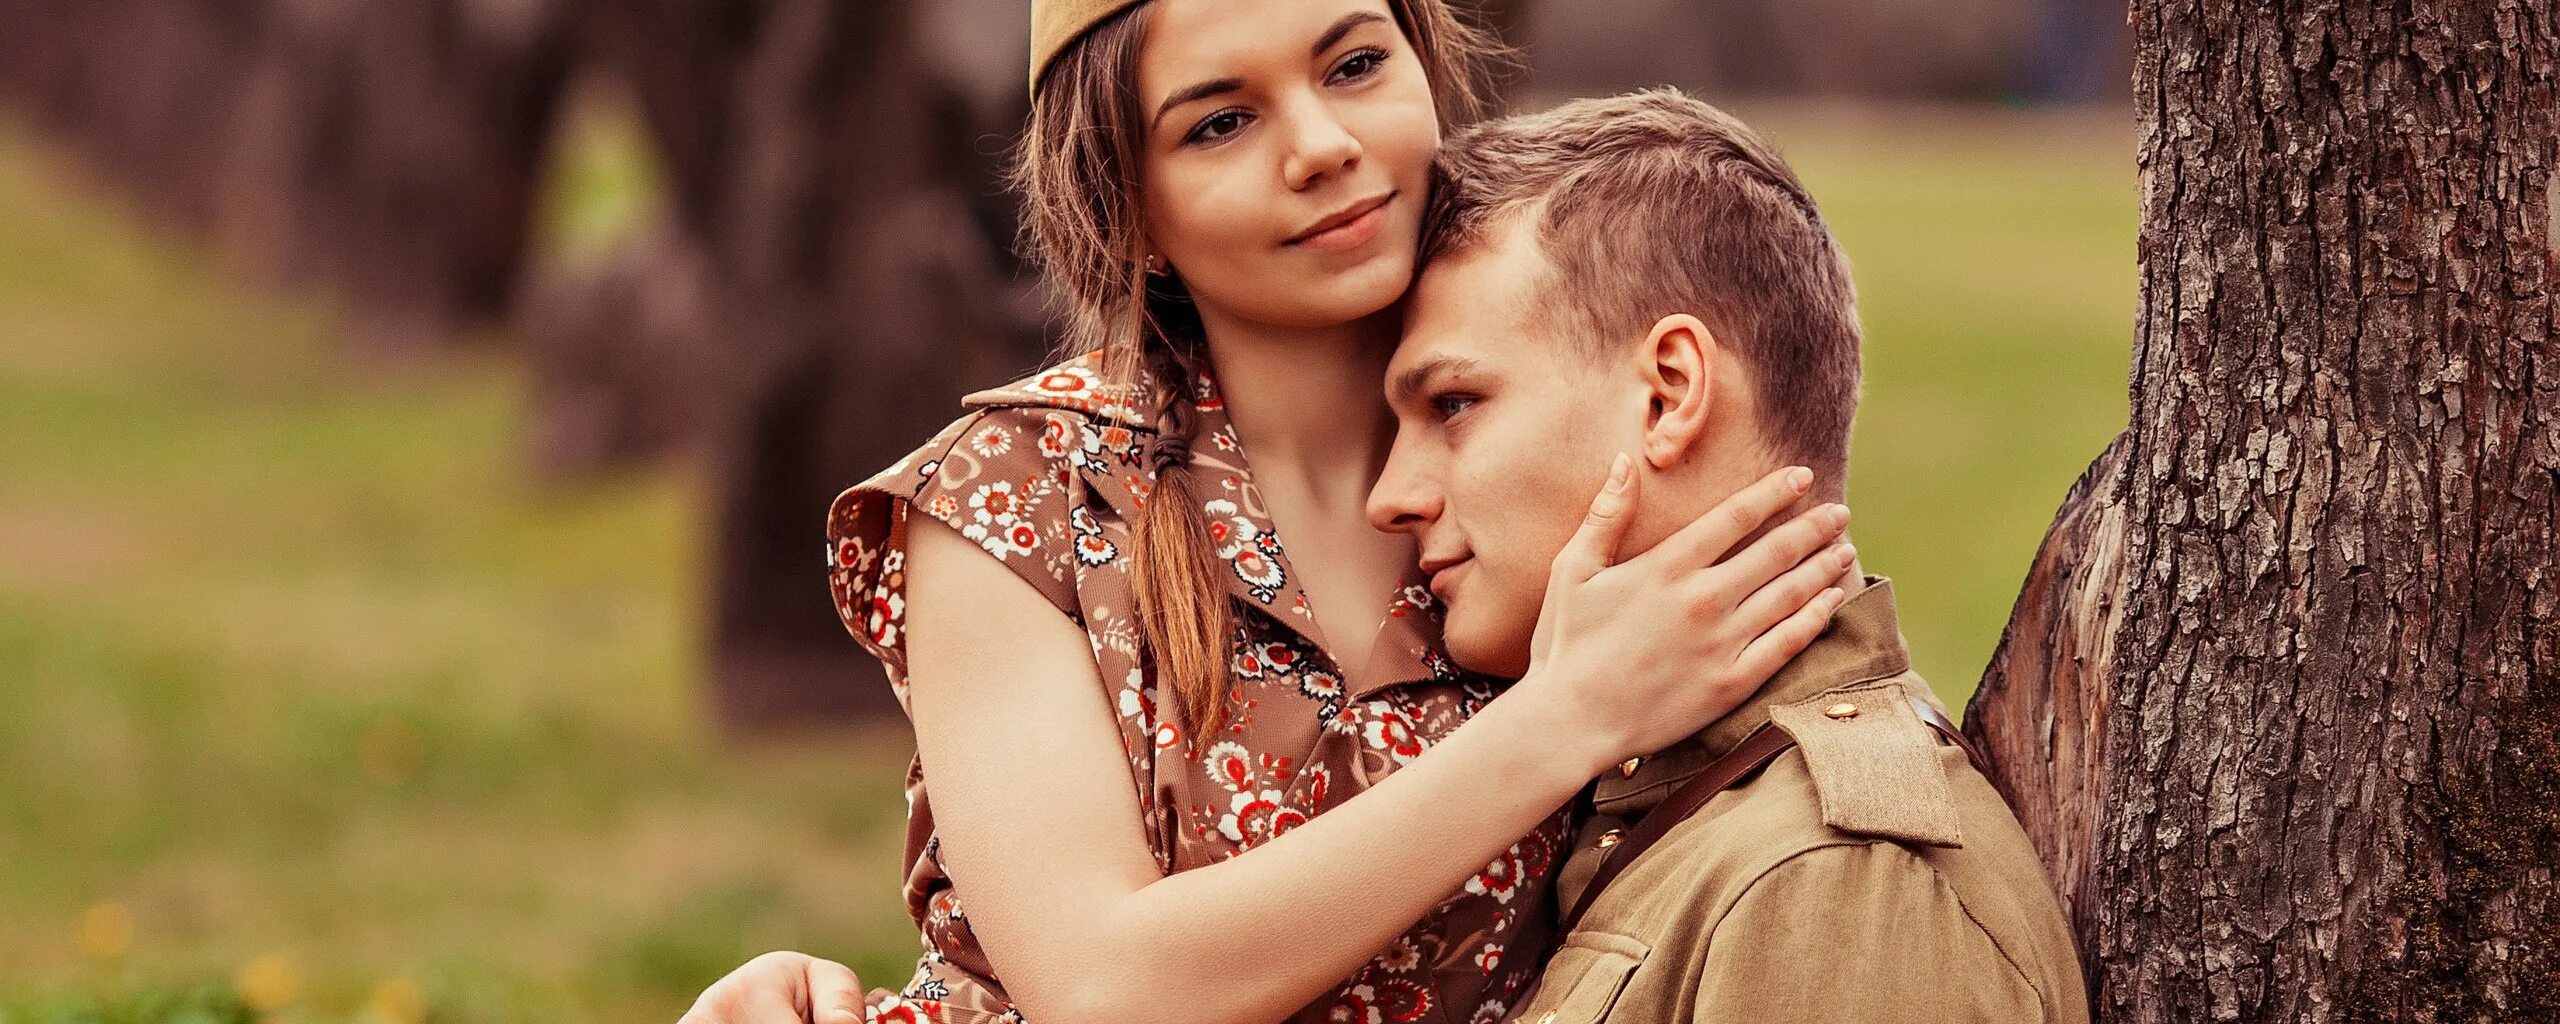 6 мая мужчина. Девушка солдат. Девушка солдата картинки. День Победы молодые люди. Солдат с женой на природе.